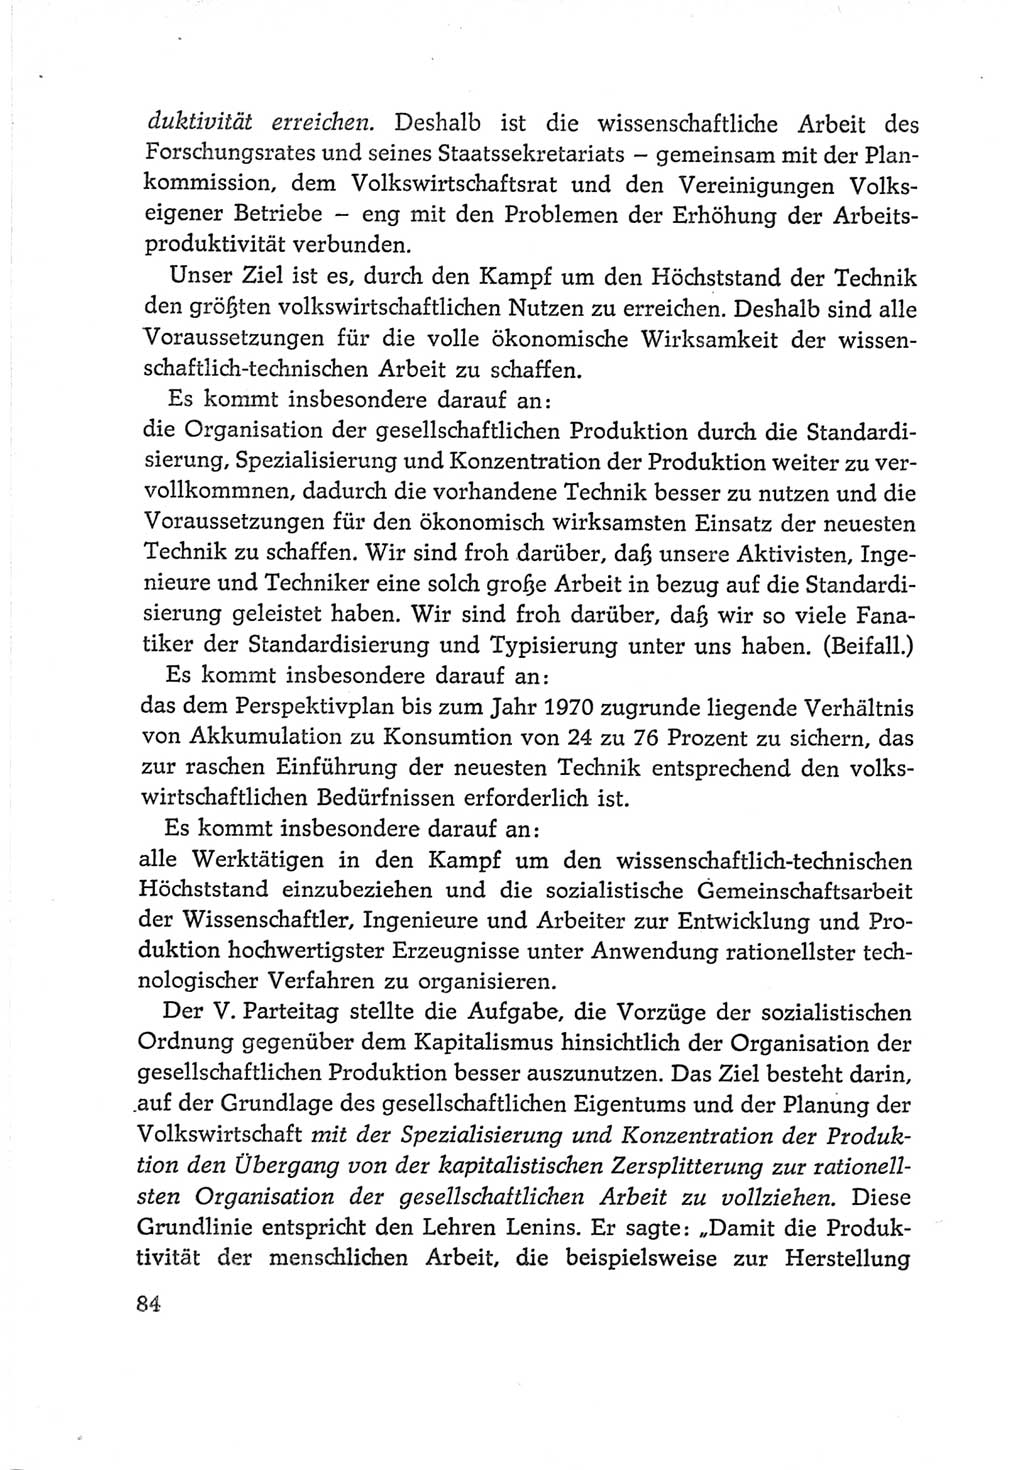 Protokoll der Verhandlungen des Ⅵ. Parteitages der Sozialistischen Einheitspartei Deutschlands (SED) [Deutsche Demokratische Republik (DDR)] 1963, Band Ⅰ, Seite 84 (Prot. Verh. Ⅵ. PT SED DDR 1963, Bd. Ⅰ, S. 84)